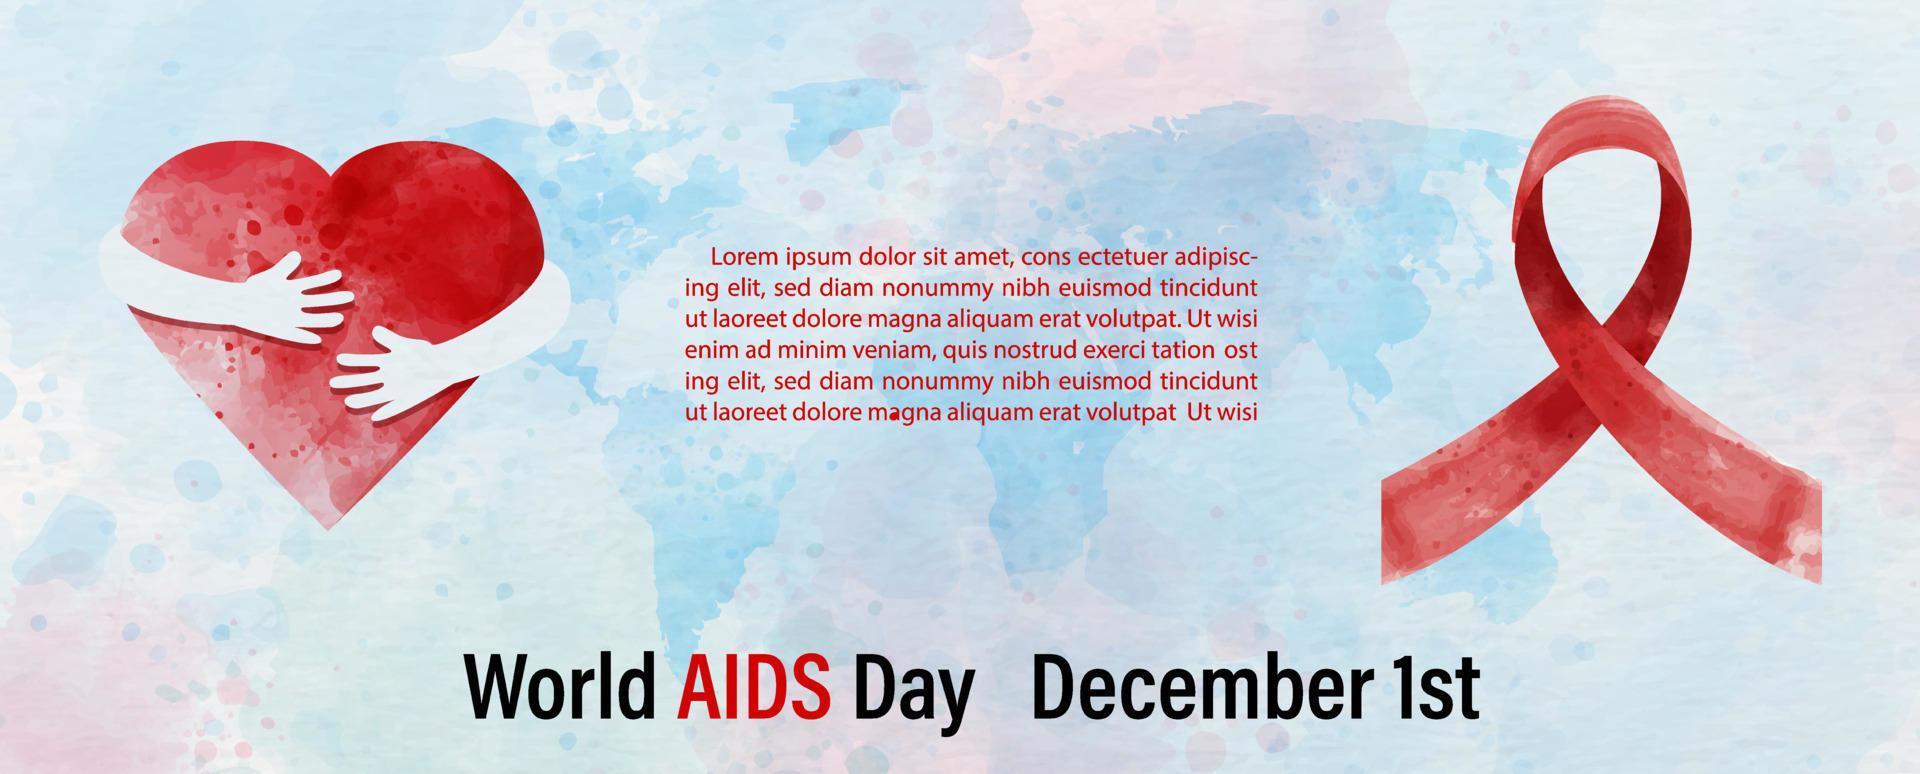 campaña del afiche del día mundial del sida con cinta roja en estilo de colores acuáticos y textos de ejemplo en el mapa del mundo azul y fondo de patrón de papel blanco. todo en banner web y diseño vectorial. vector